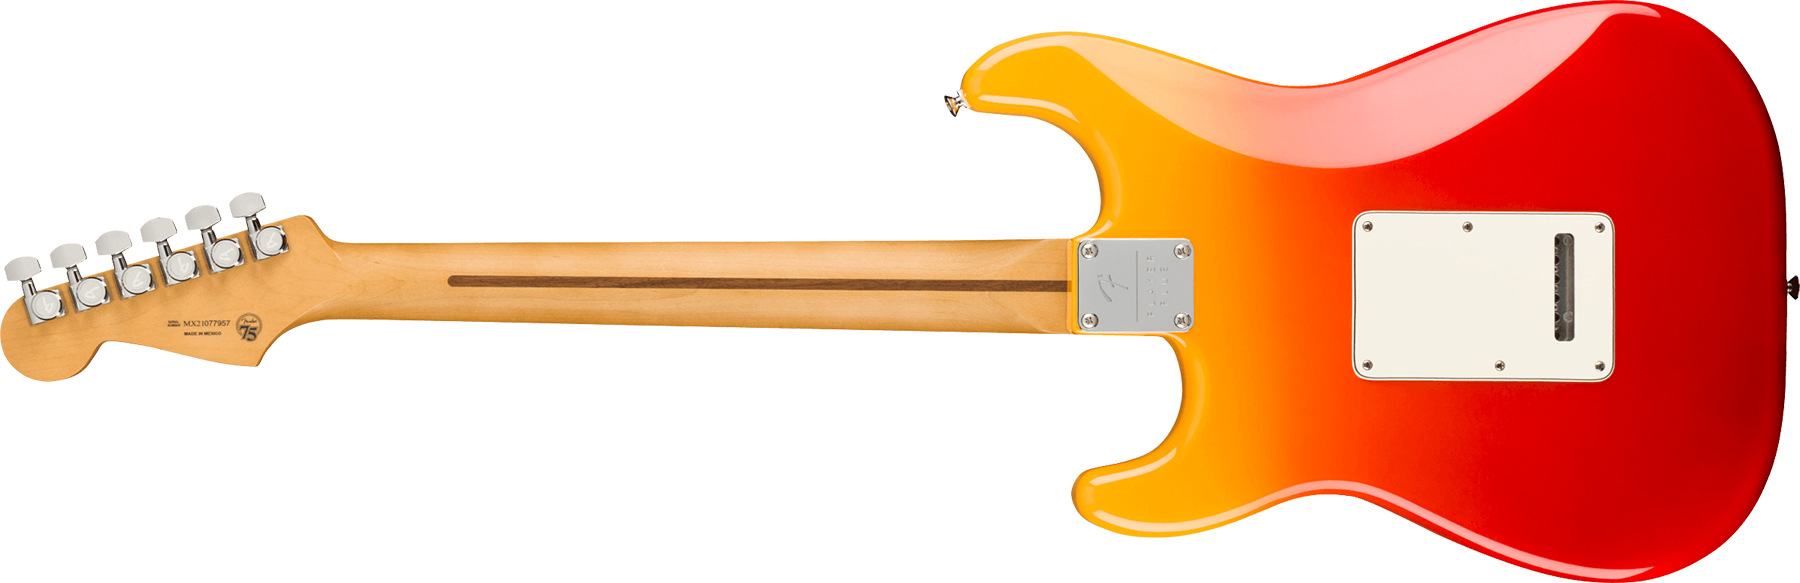 Fender Strat Player Plus Lh Gaucher Mex 3s Trem Pf - Tequila Sunrise - Guitarra electrica para zurdos - Variation 1